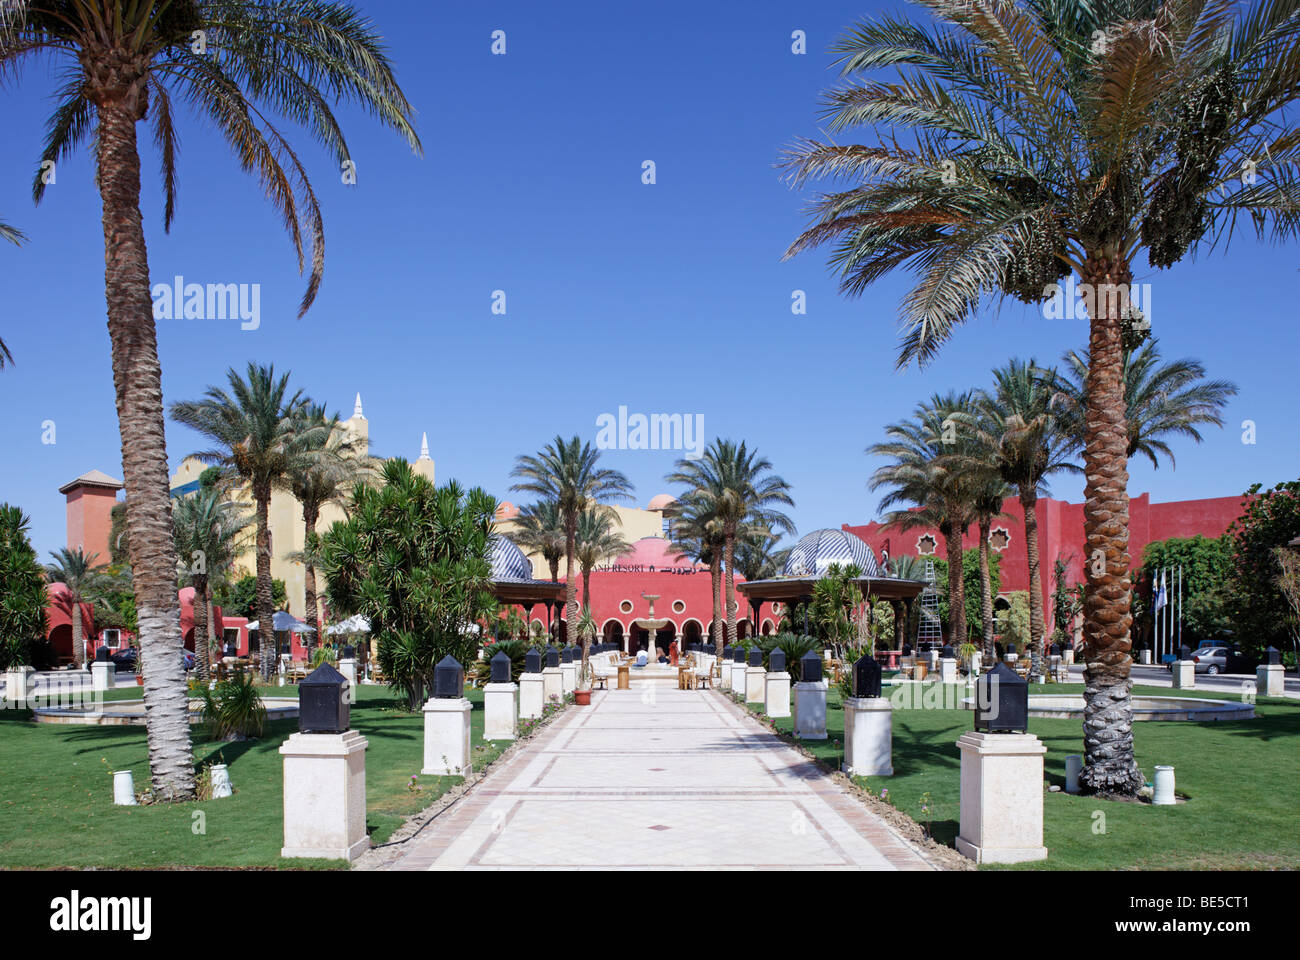 Piazza di fronte Grand Resort, hotel, fontana, palme da dattero, padiglioni, Yussuf Afifi road, Hurghada, Egitto, Mare Rosso, Africa Foto Stock